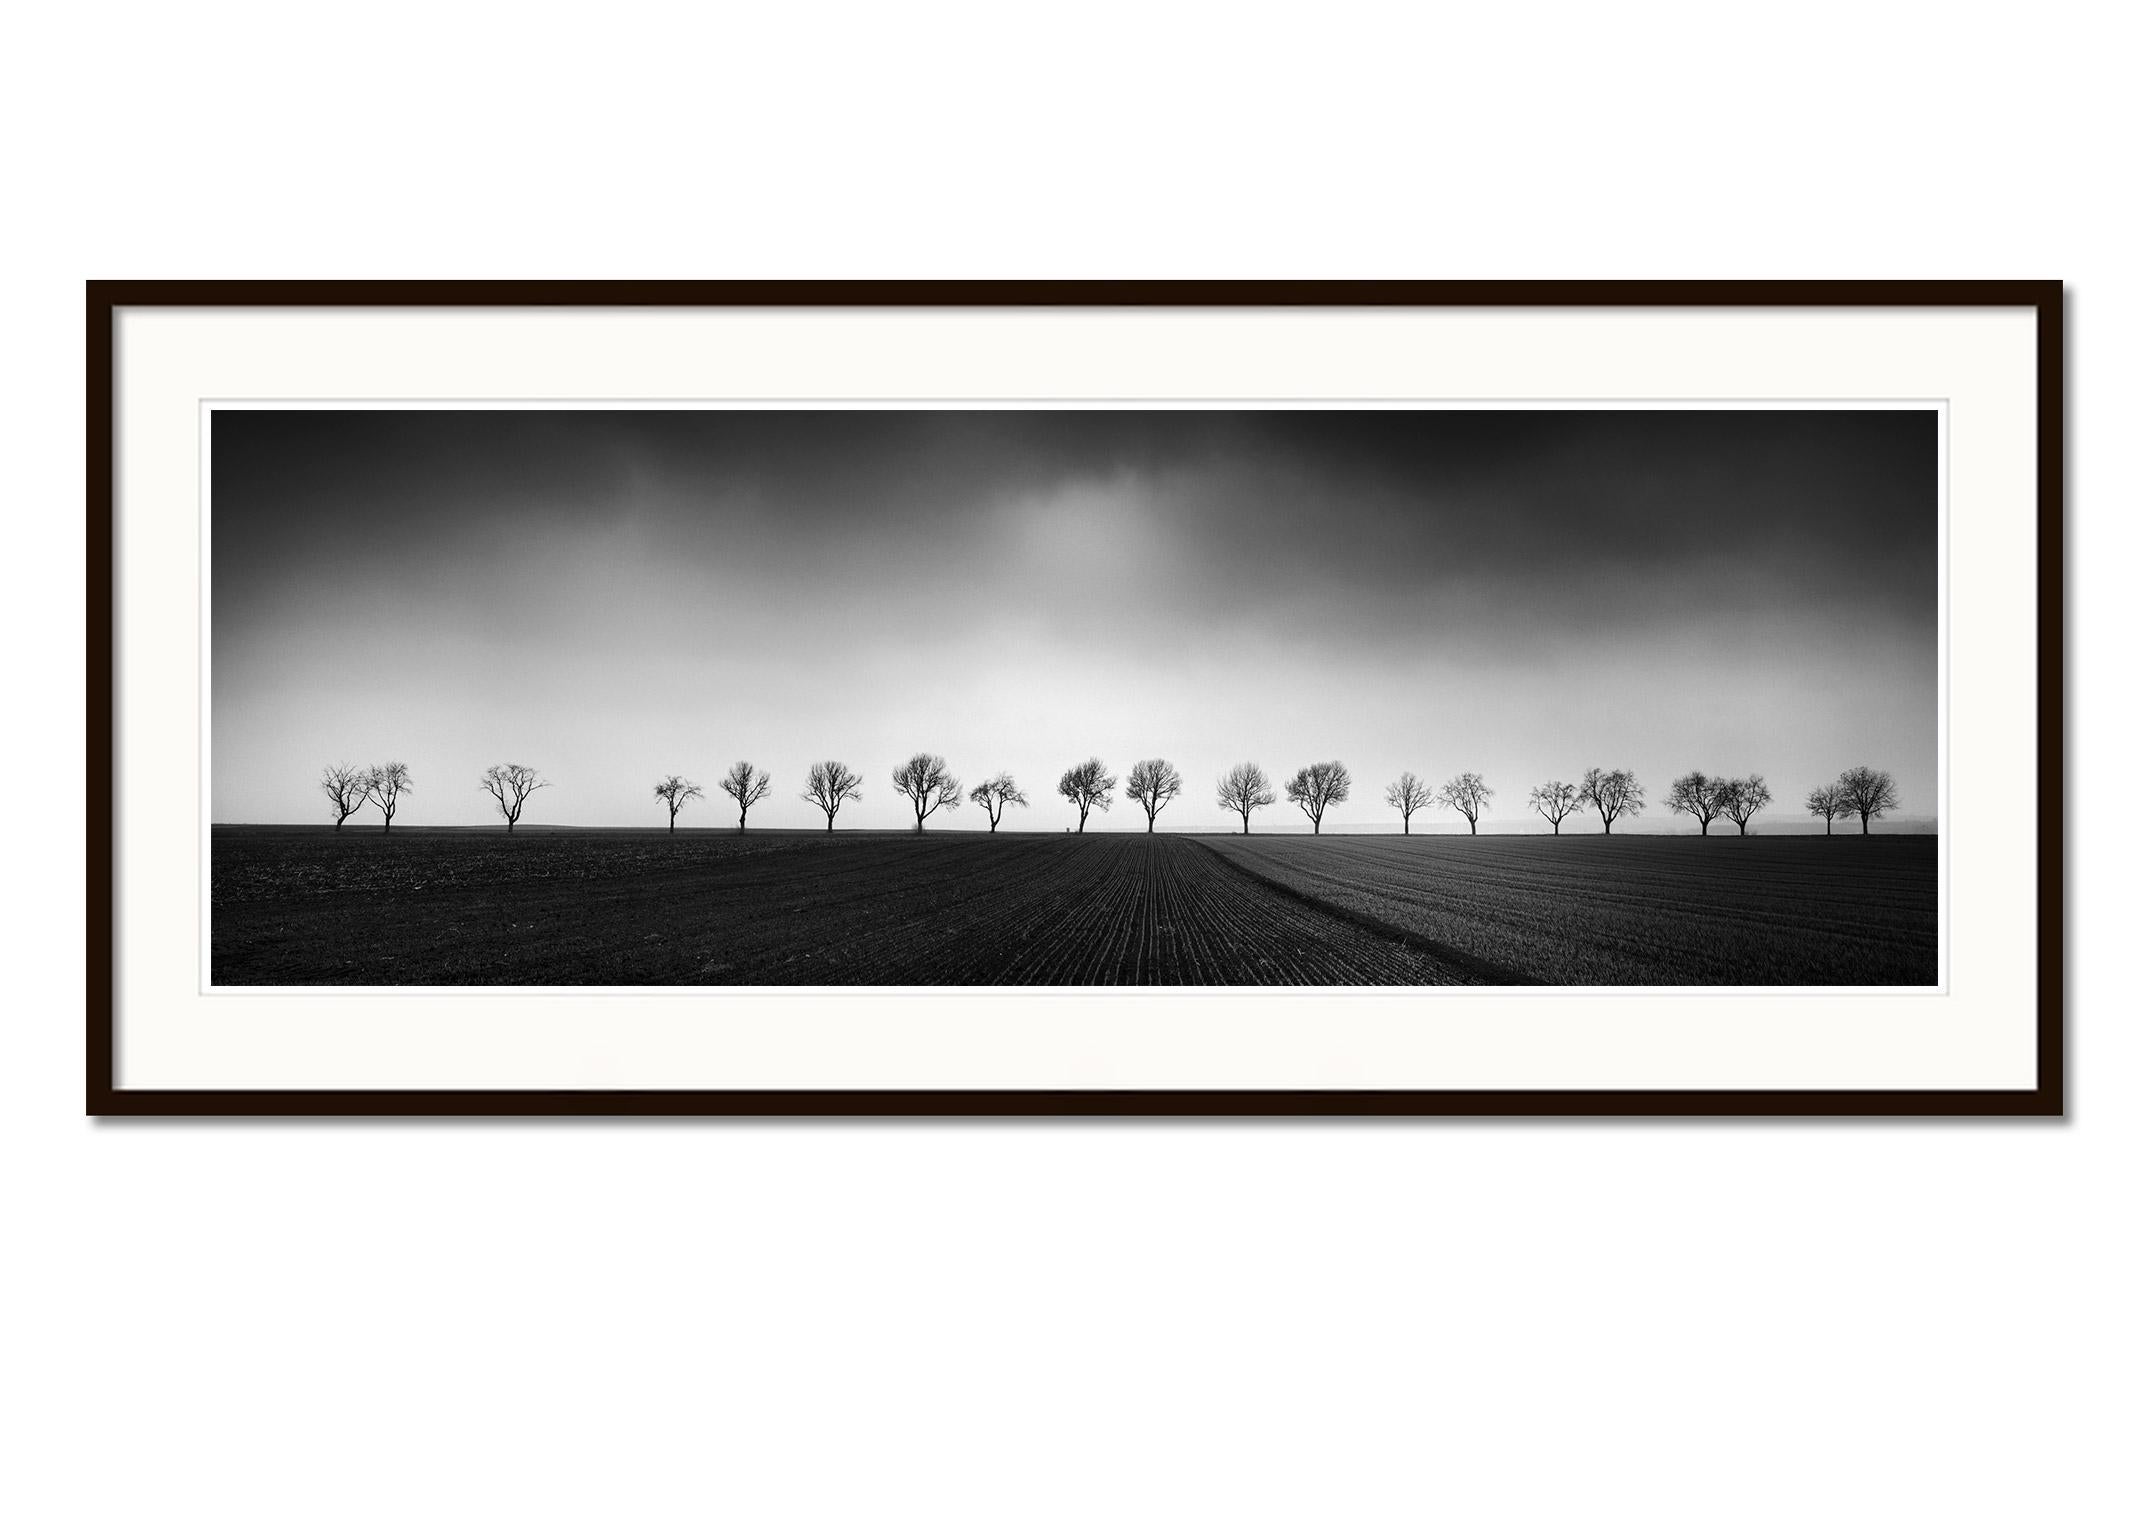 Vingt cerisiers Avenue noir et blanc panorama paysage photographie d'art - Gris Black and White Photograph par Gerald Berghammer